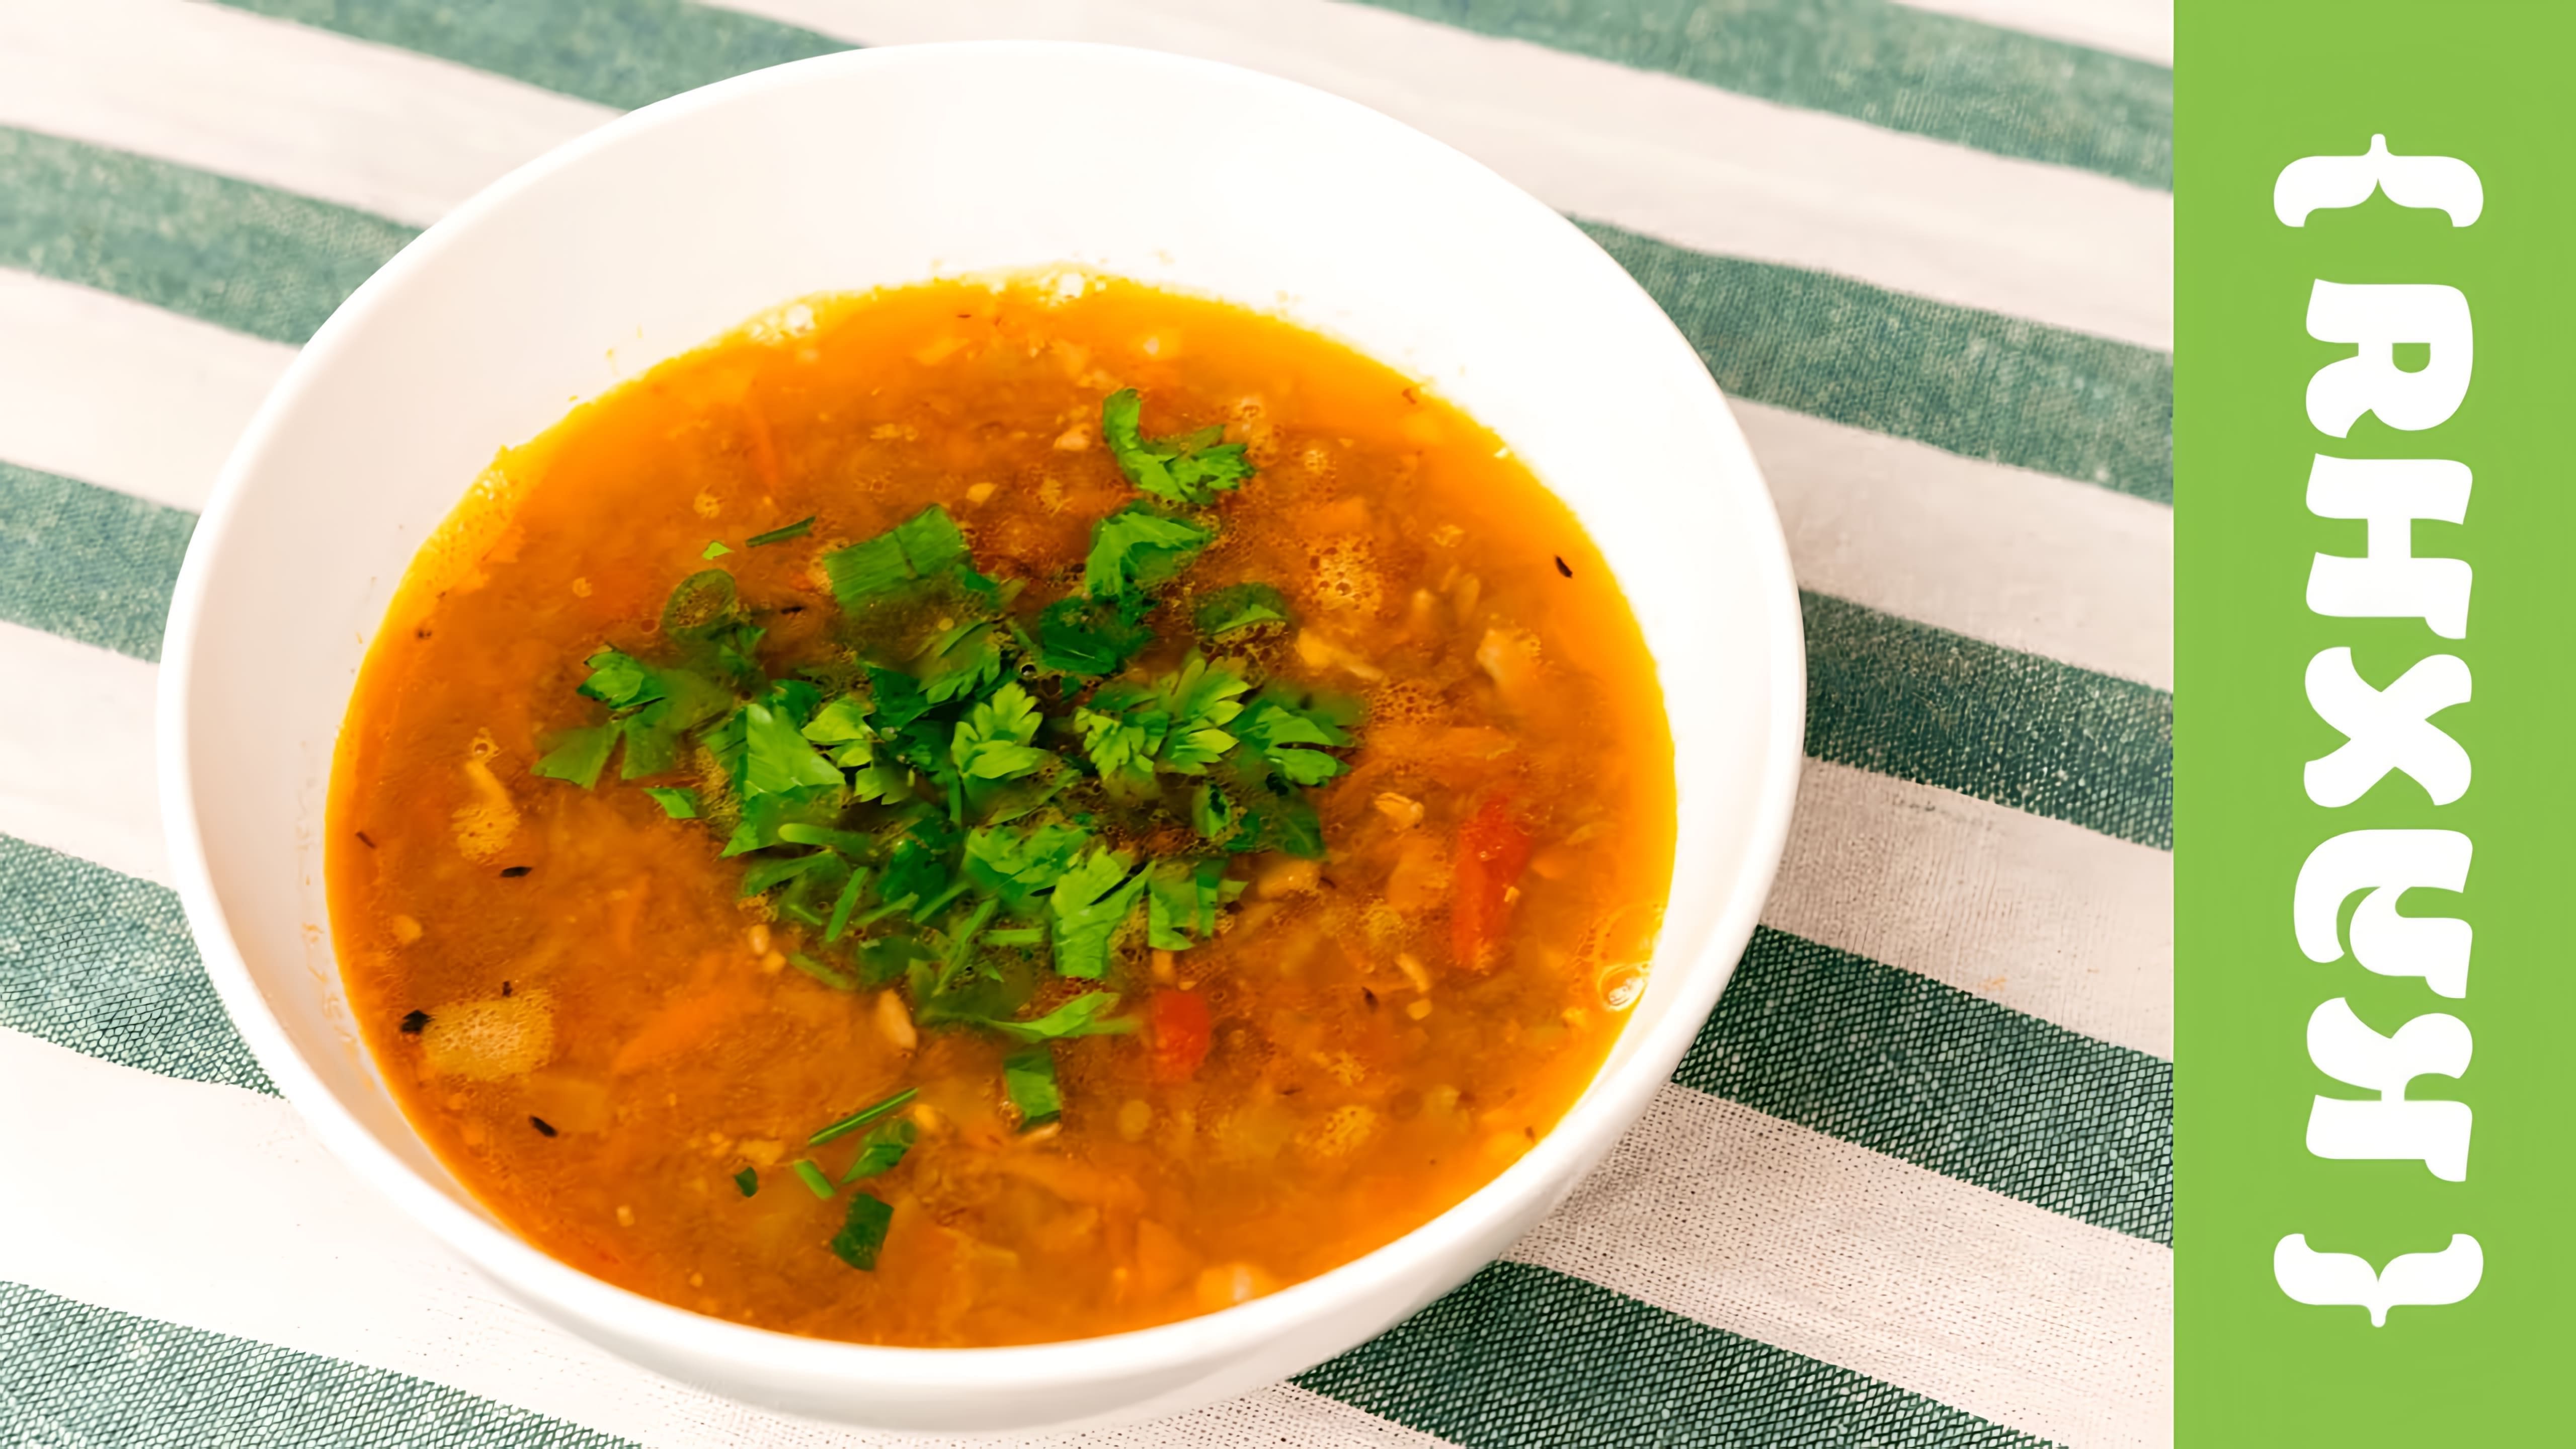 В этом видео демонстрируется рецепт чечевичного супа с беконом